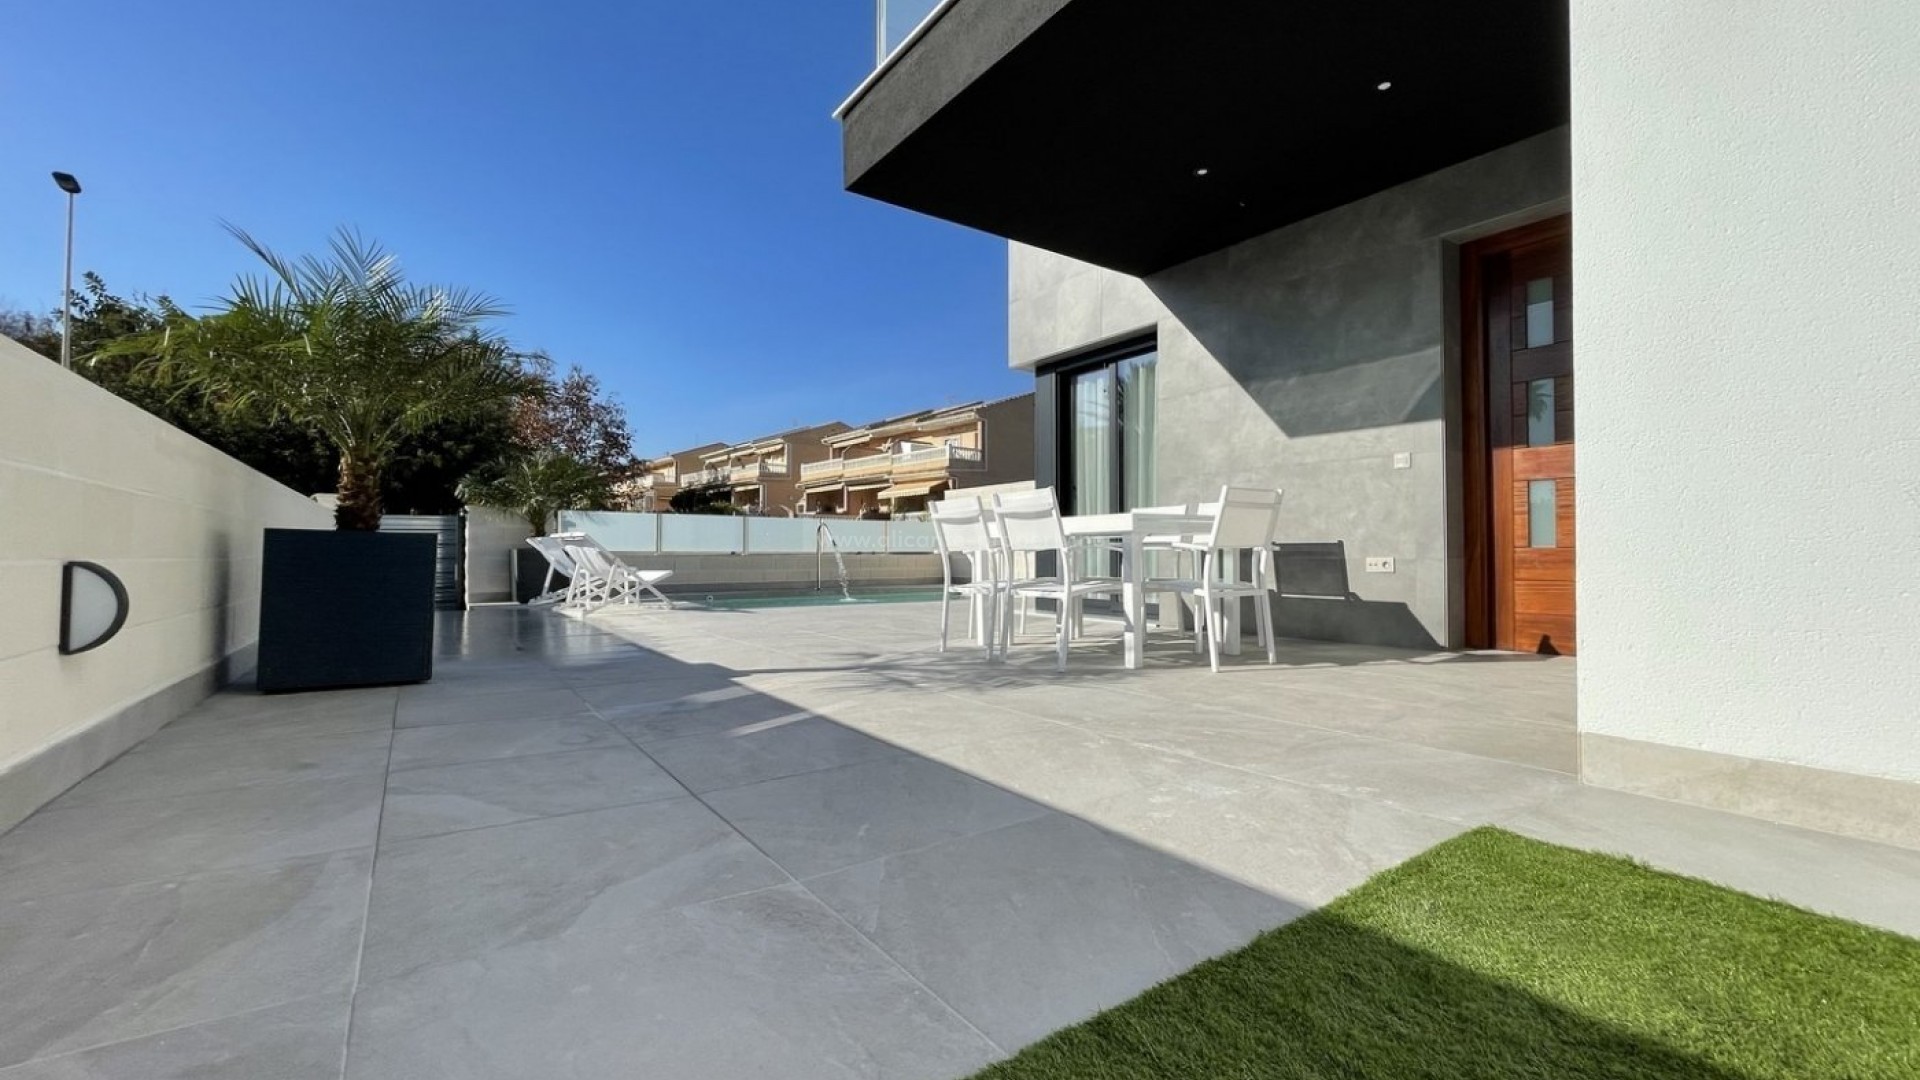 Helt nye hus/villaer i Los Altos de Torrevieja, 3 soverom (et med walk-in-garderobe) , 2 bad, gjestetoalett, basseng, stor terrasse og solarium